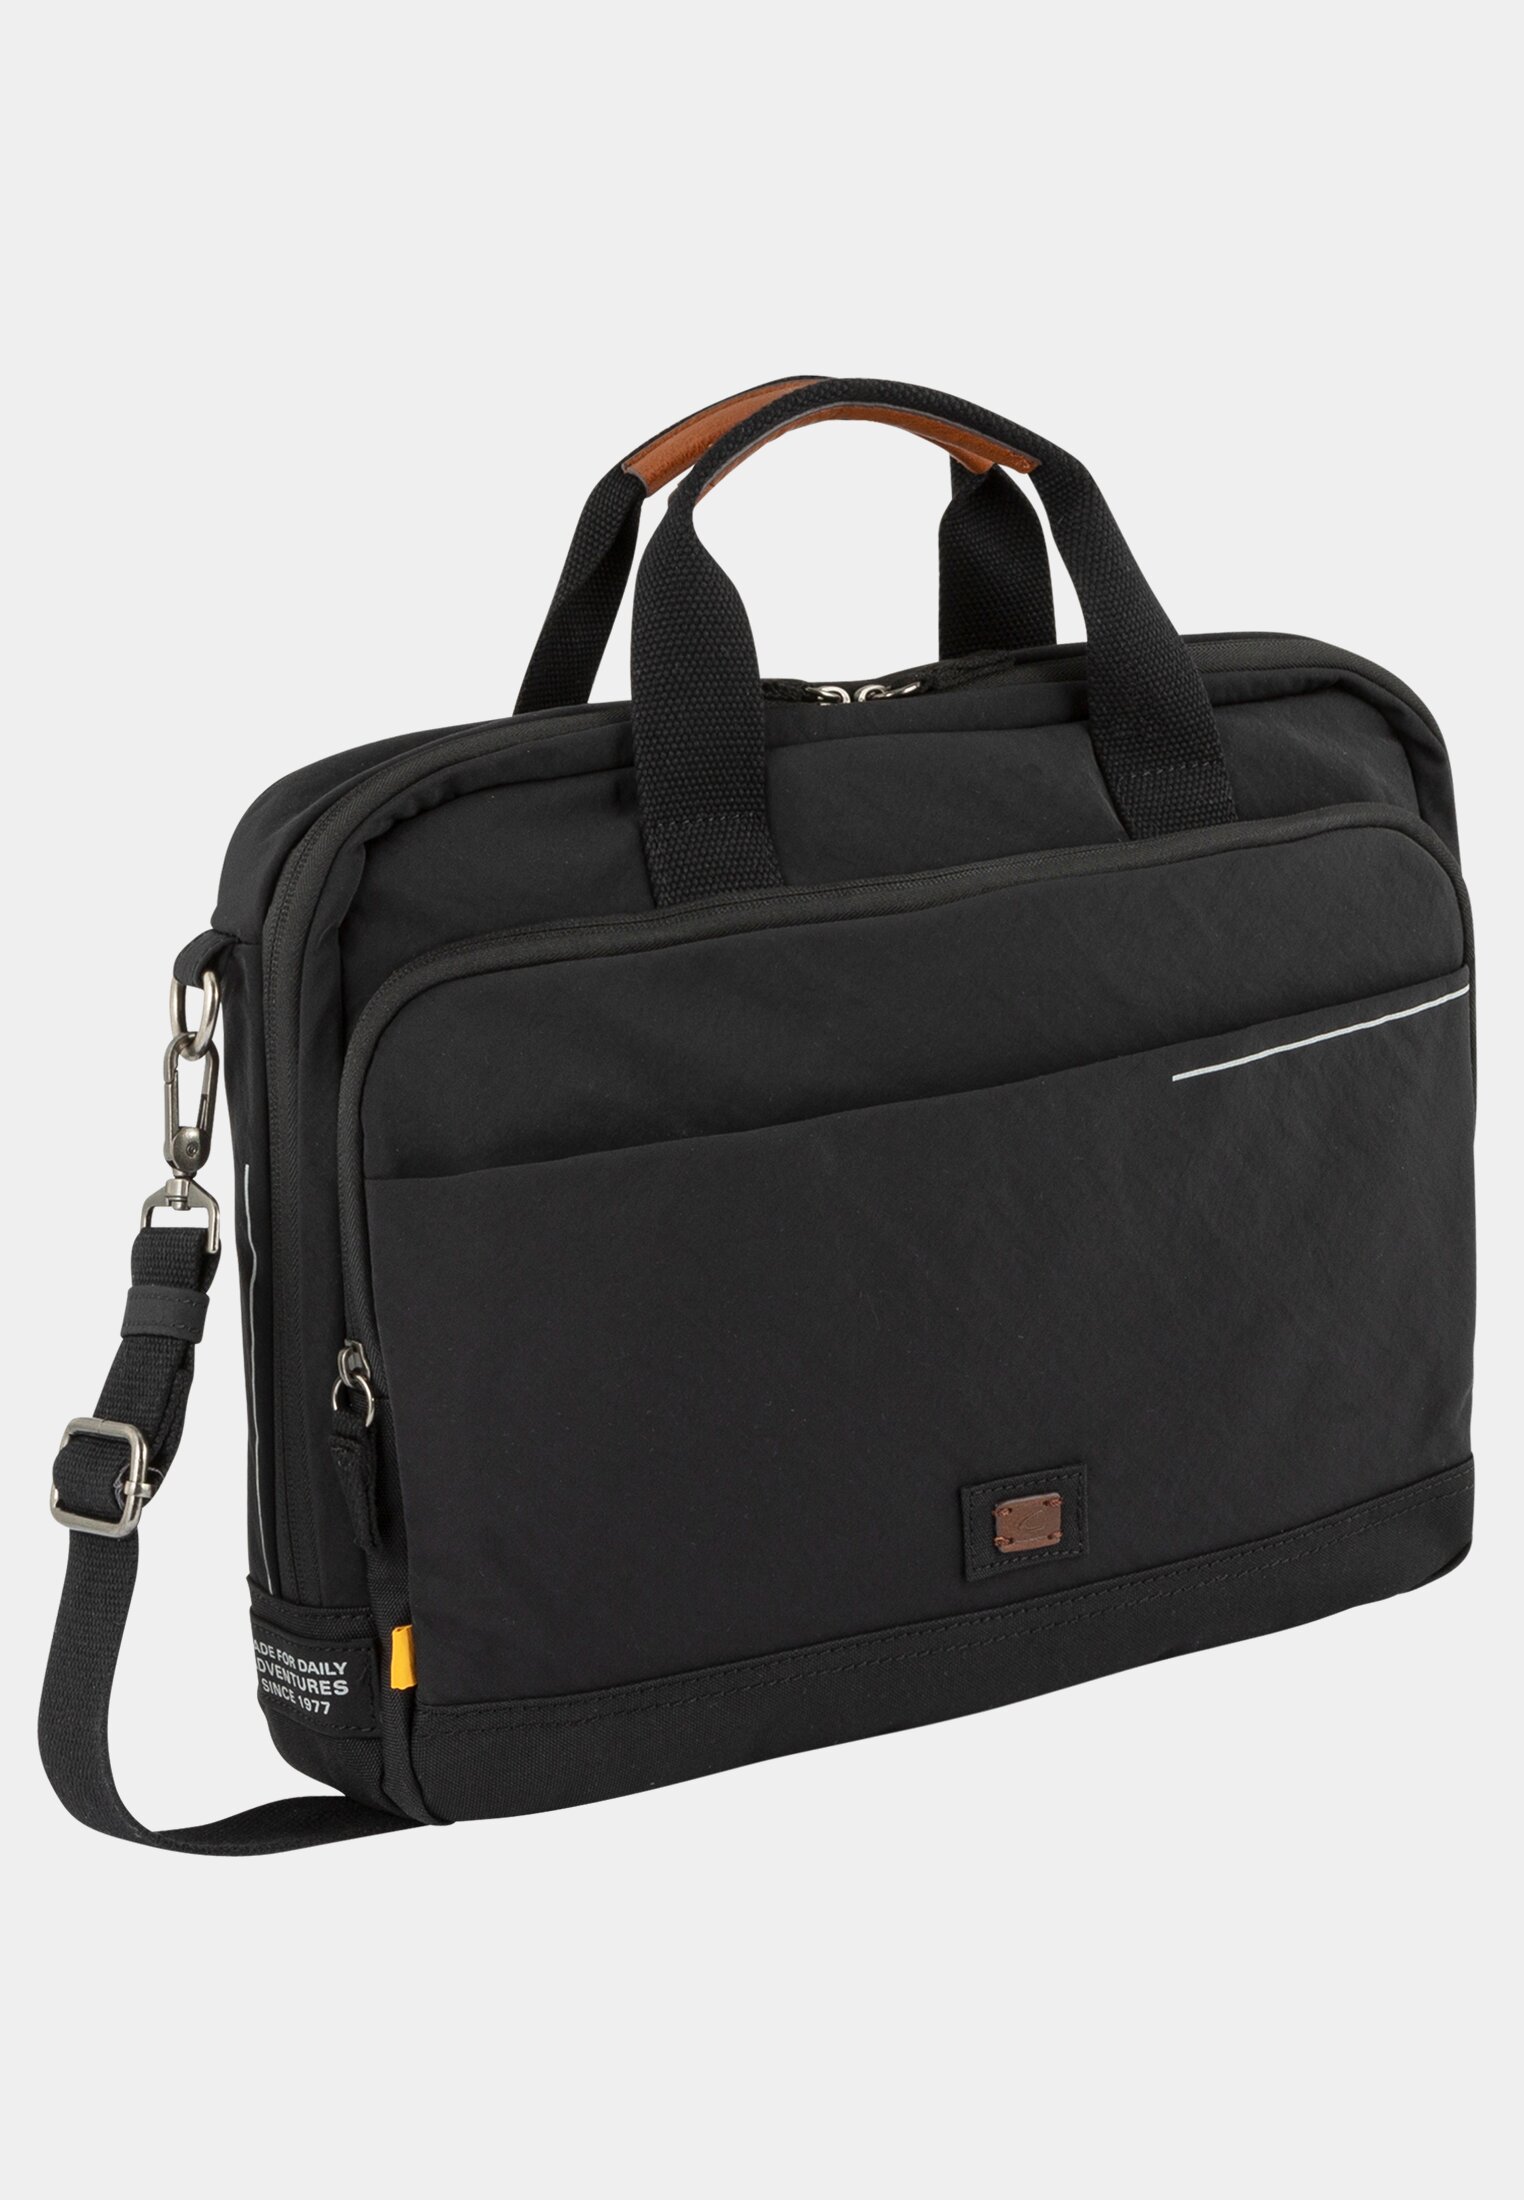 Camel Active Unisex Business Bag with adjustable shoulder strap